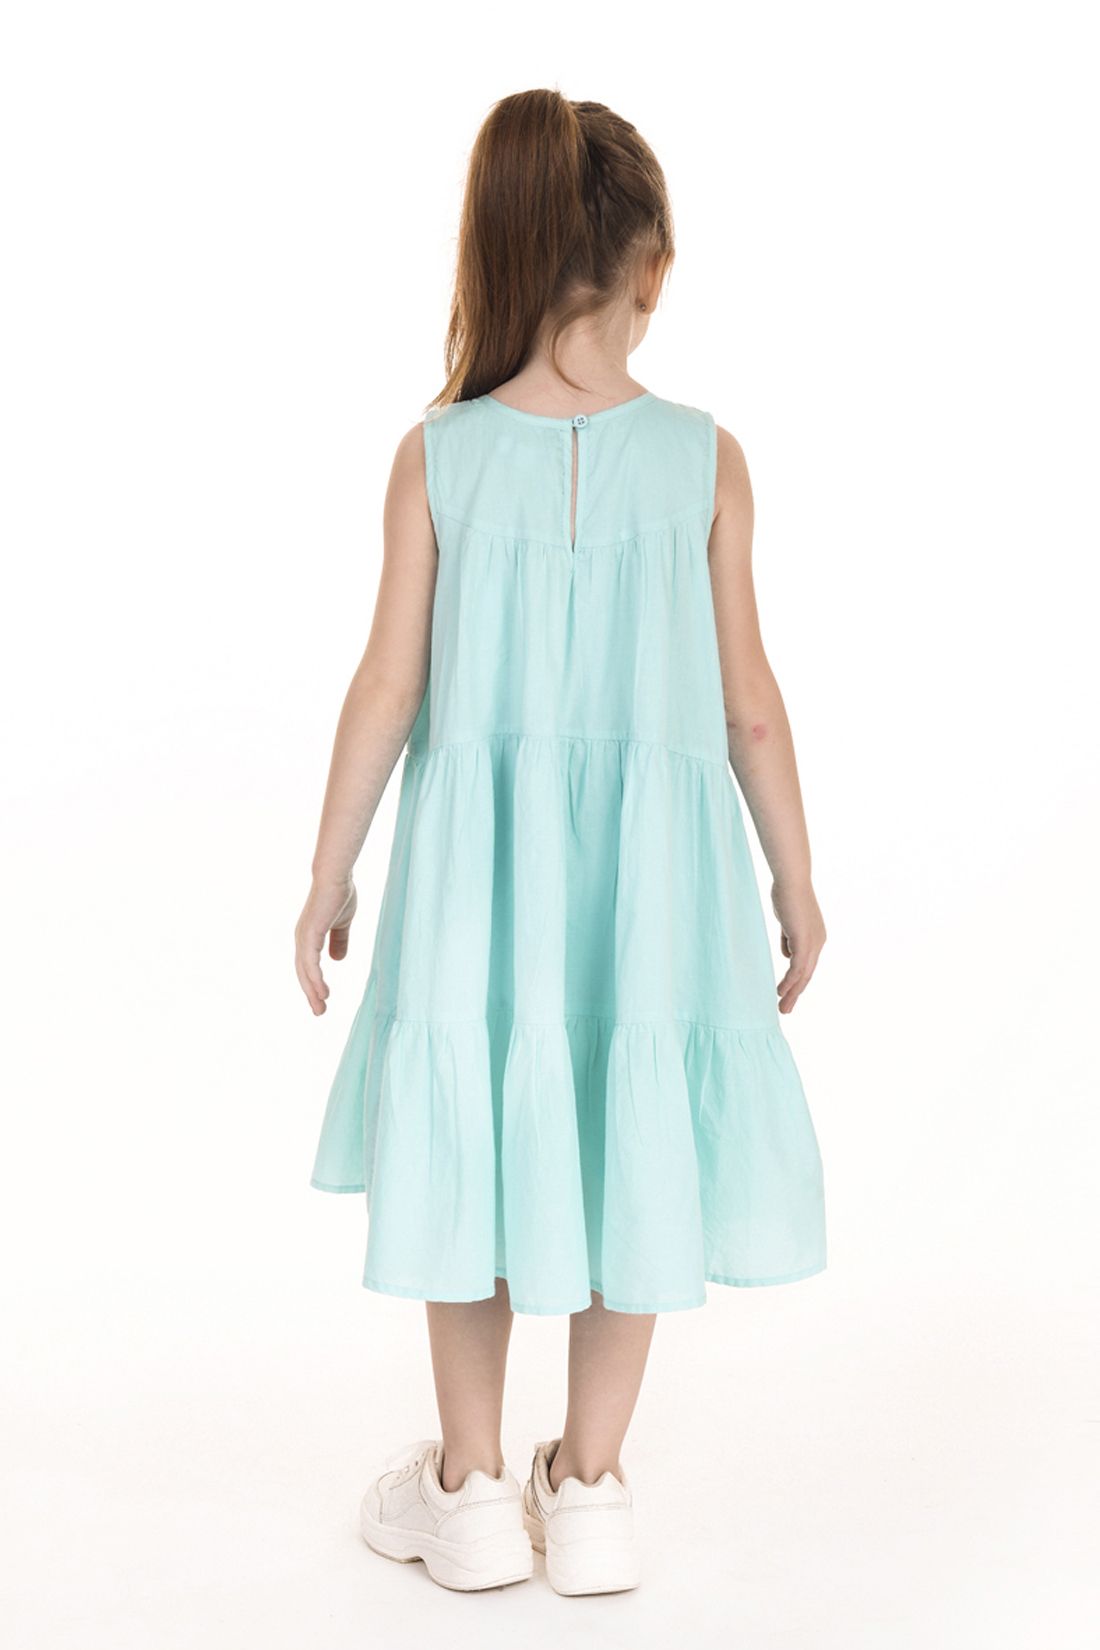 Платье для девочки (арт. baon BK459006), размер 110-116, цвет зеленый Платье для девочки (арт. baon BK459006) - фото 6